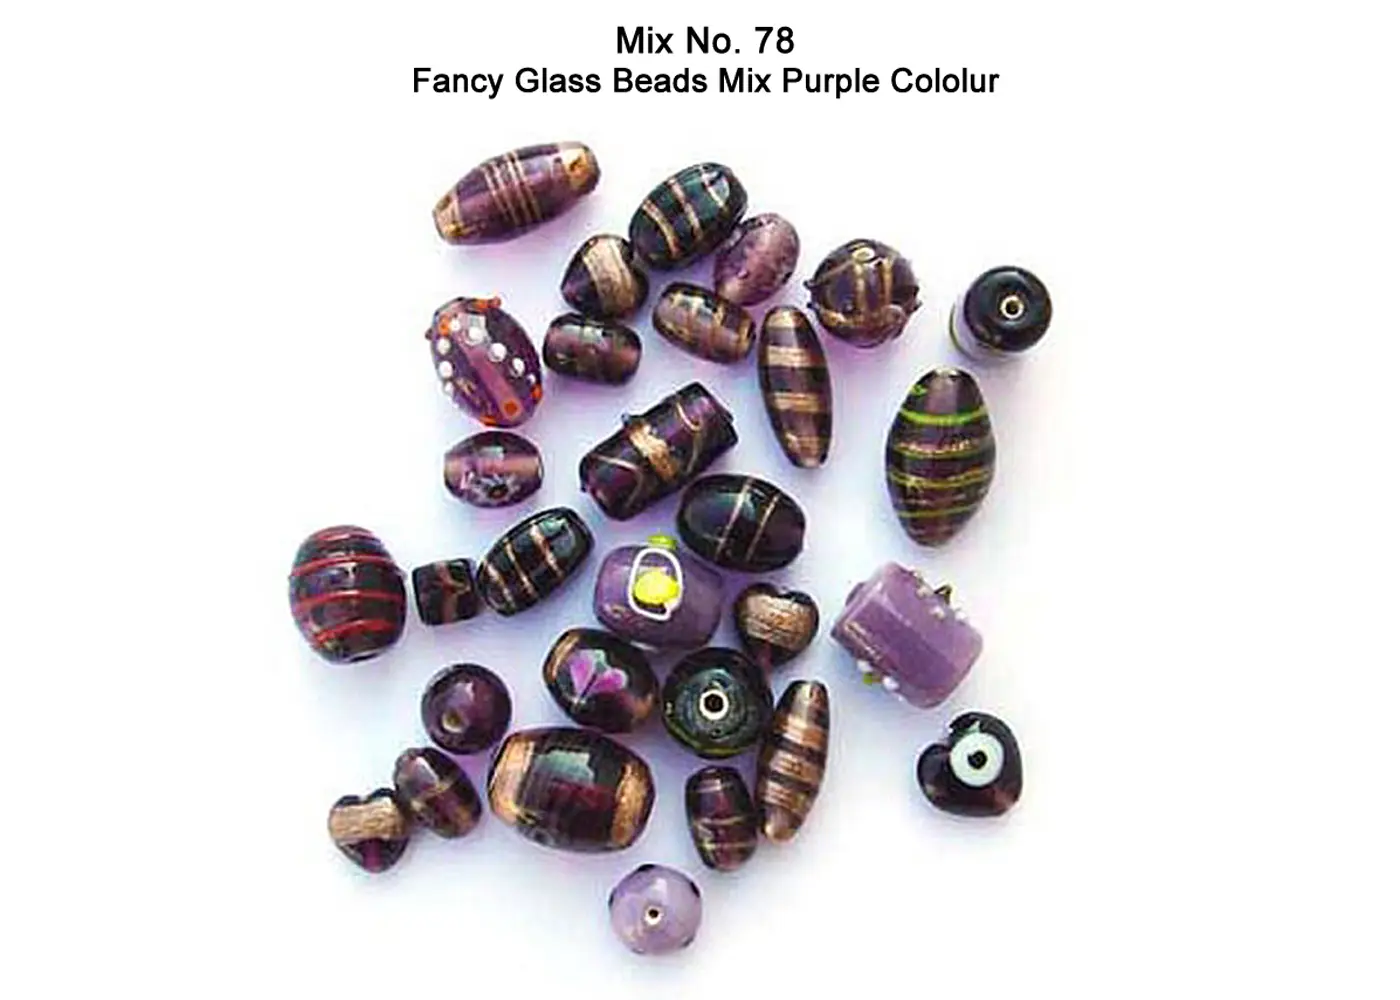 Fancy Glass Beads in Purple color